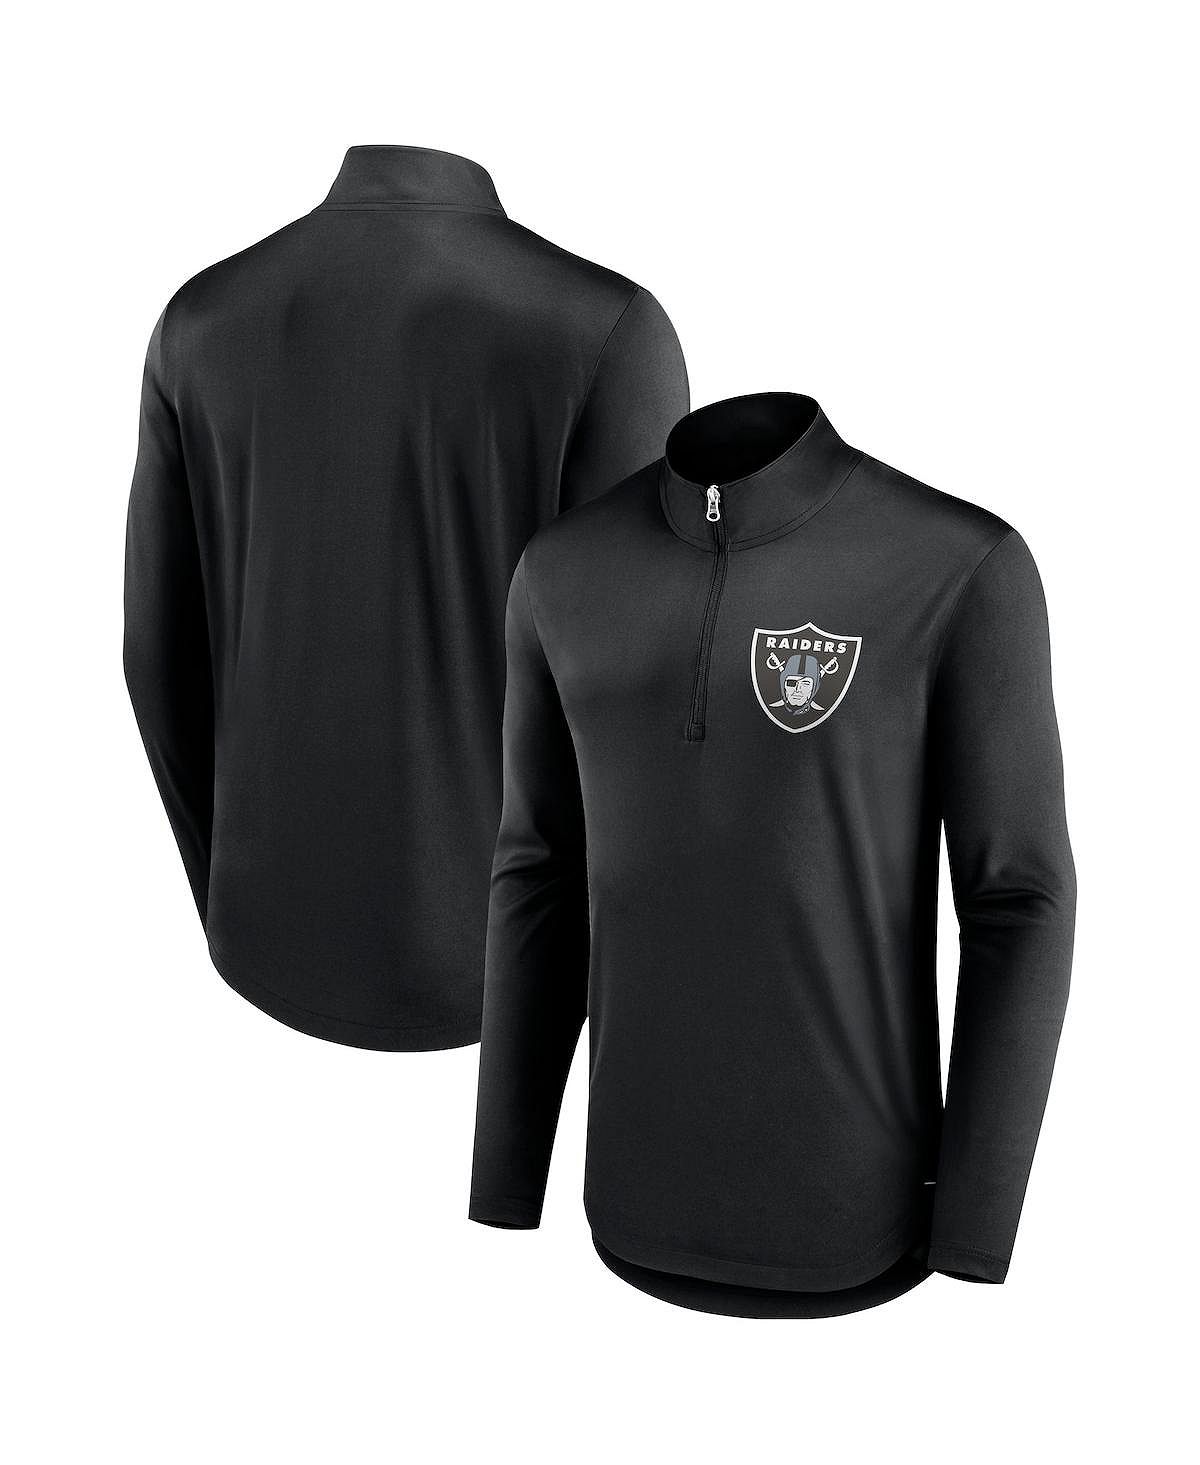 Мужская черная фирменная футболка с молнией четверть четверти Las Vegas Raiders Tough Minded Fanatics las vegas